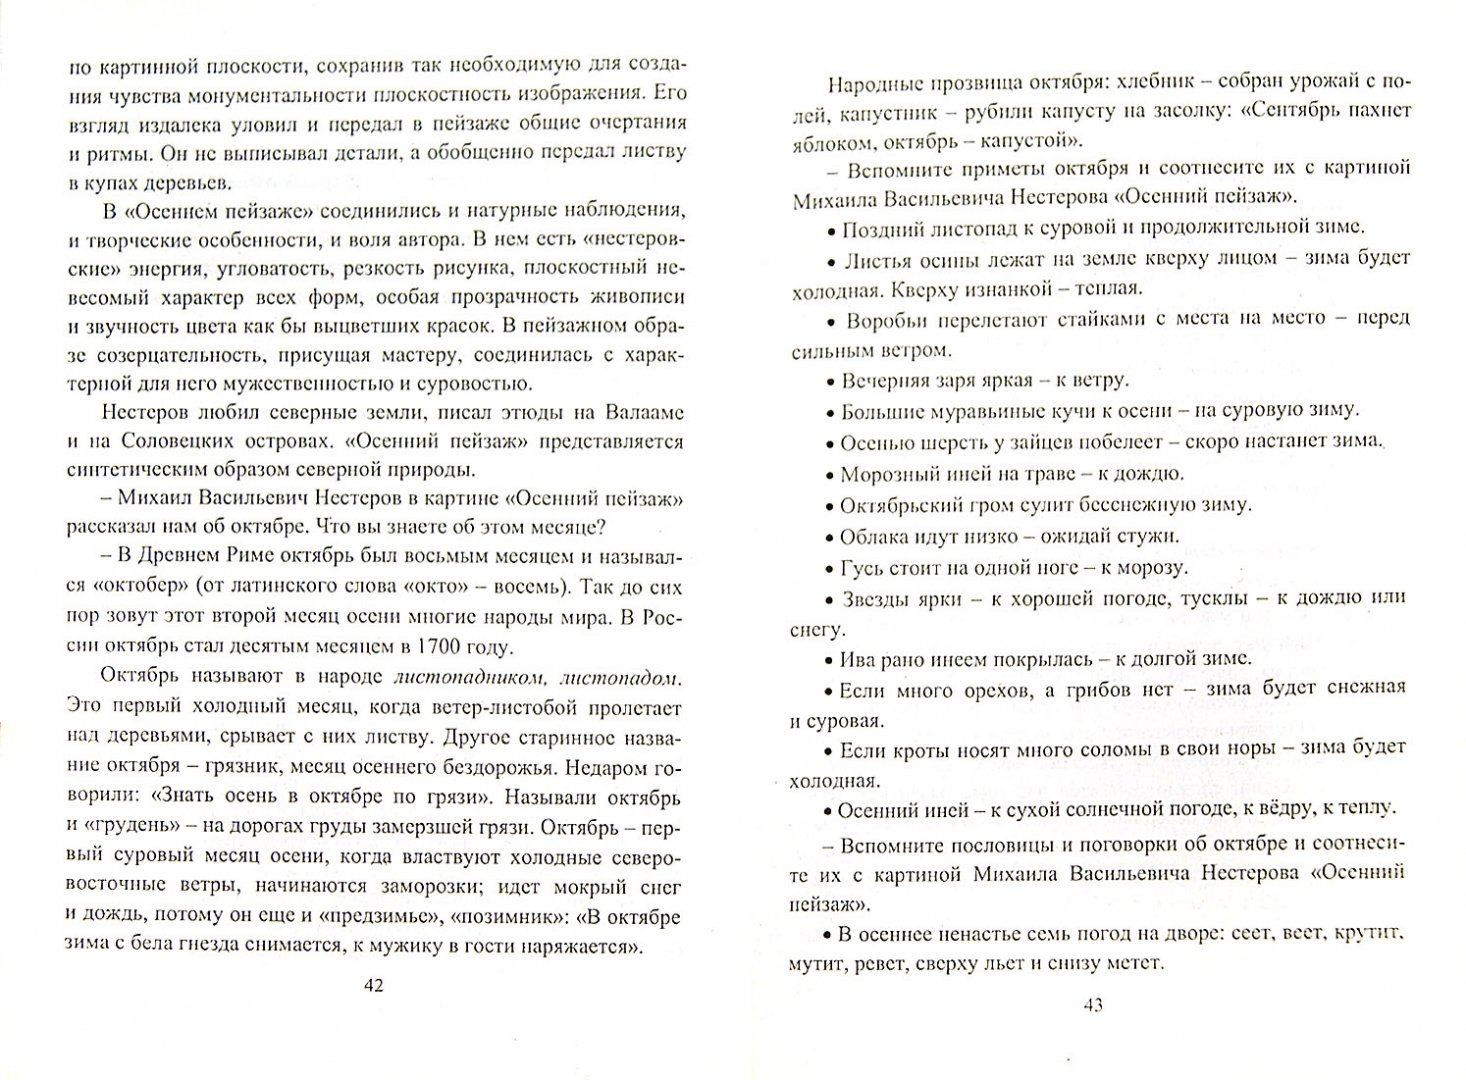 Сочинение по картине решетникова 5 класс по русскому языку